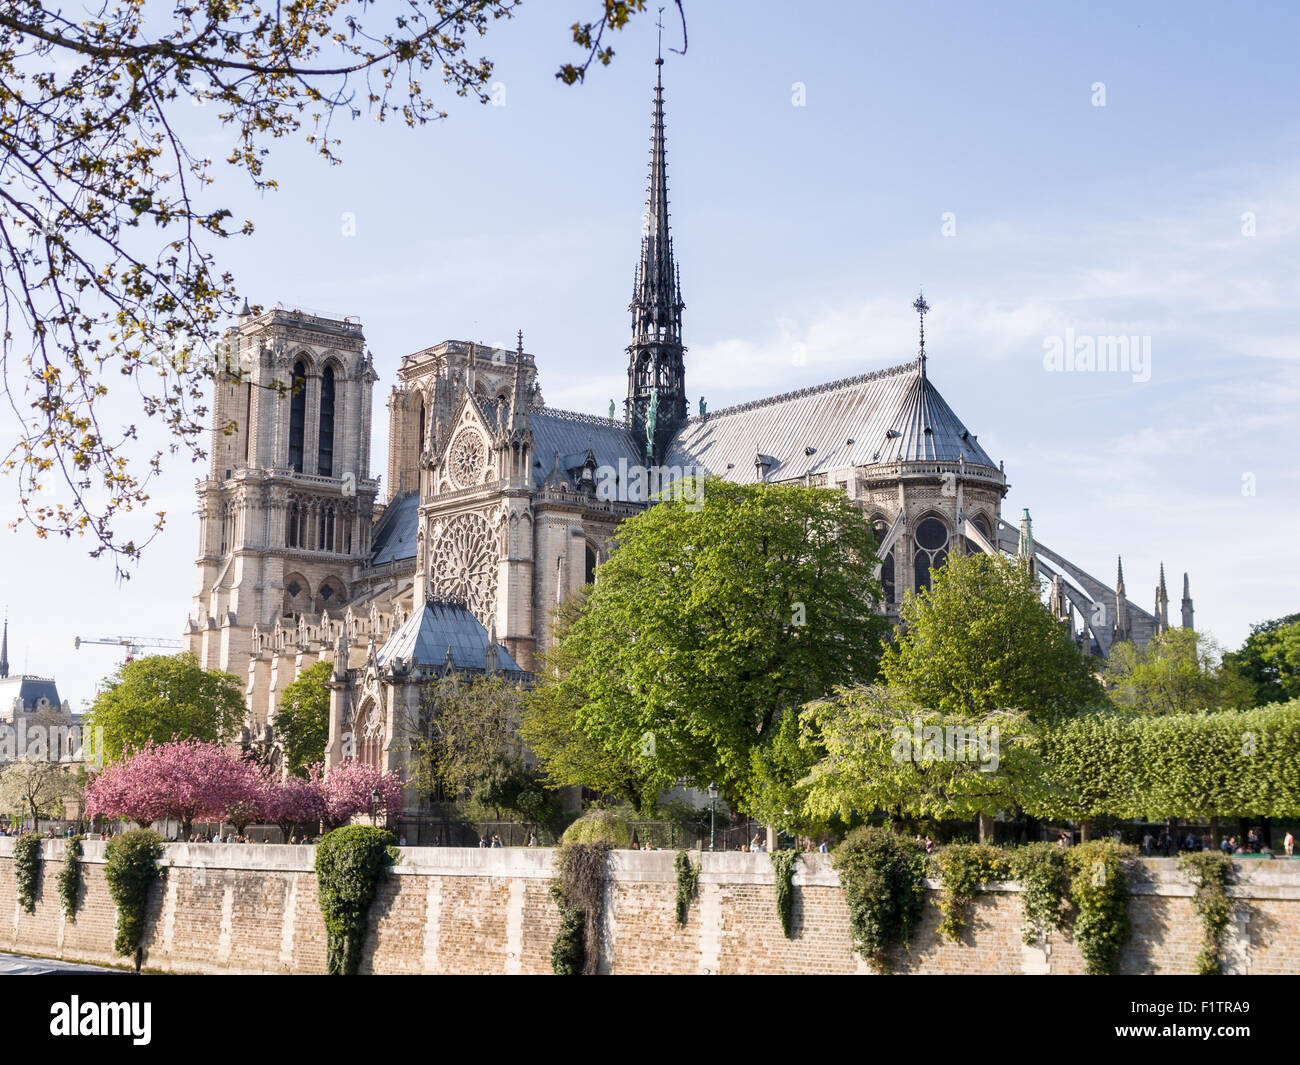 Cathédrale Notre-Dame de l'autre côté de la Seine. Le mur de la rivière canalisée forme une base pour cette vue de la célèbre cathédrale. Banque D'Images